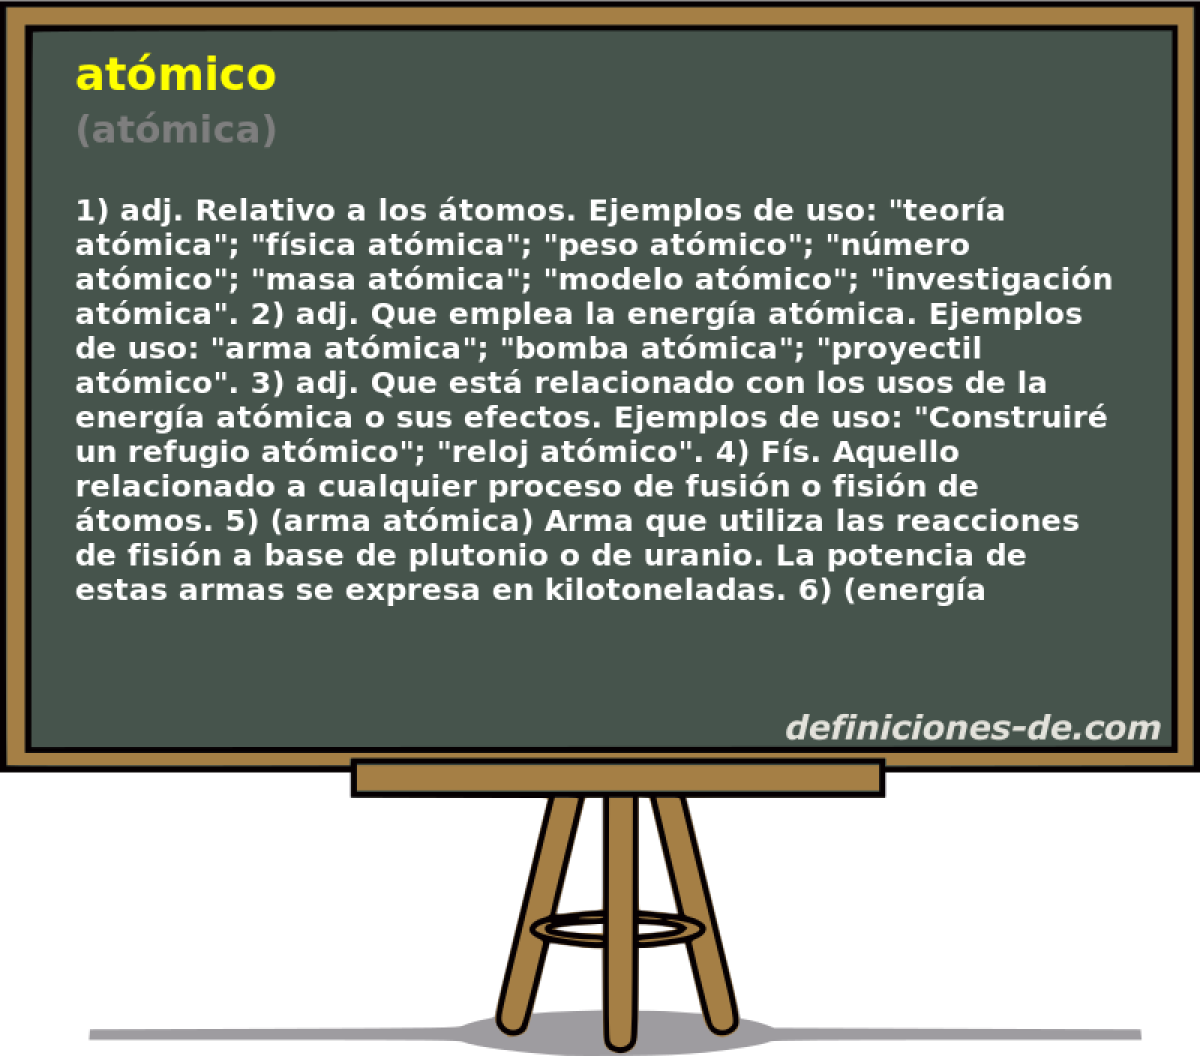 atmico (atmica)